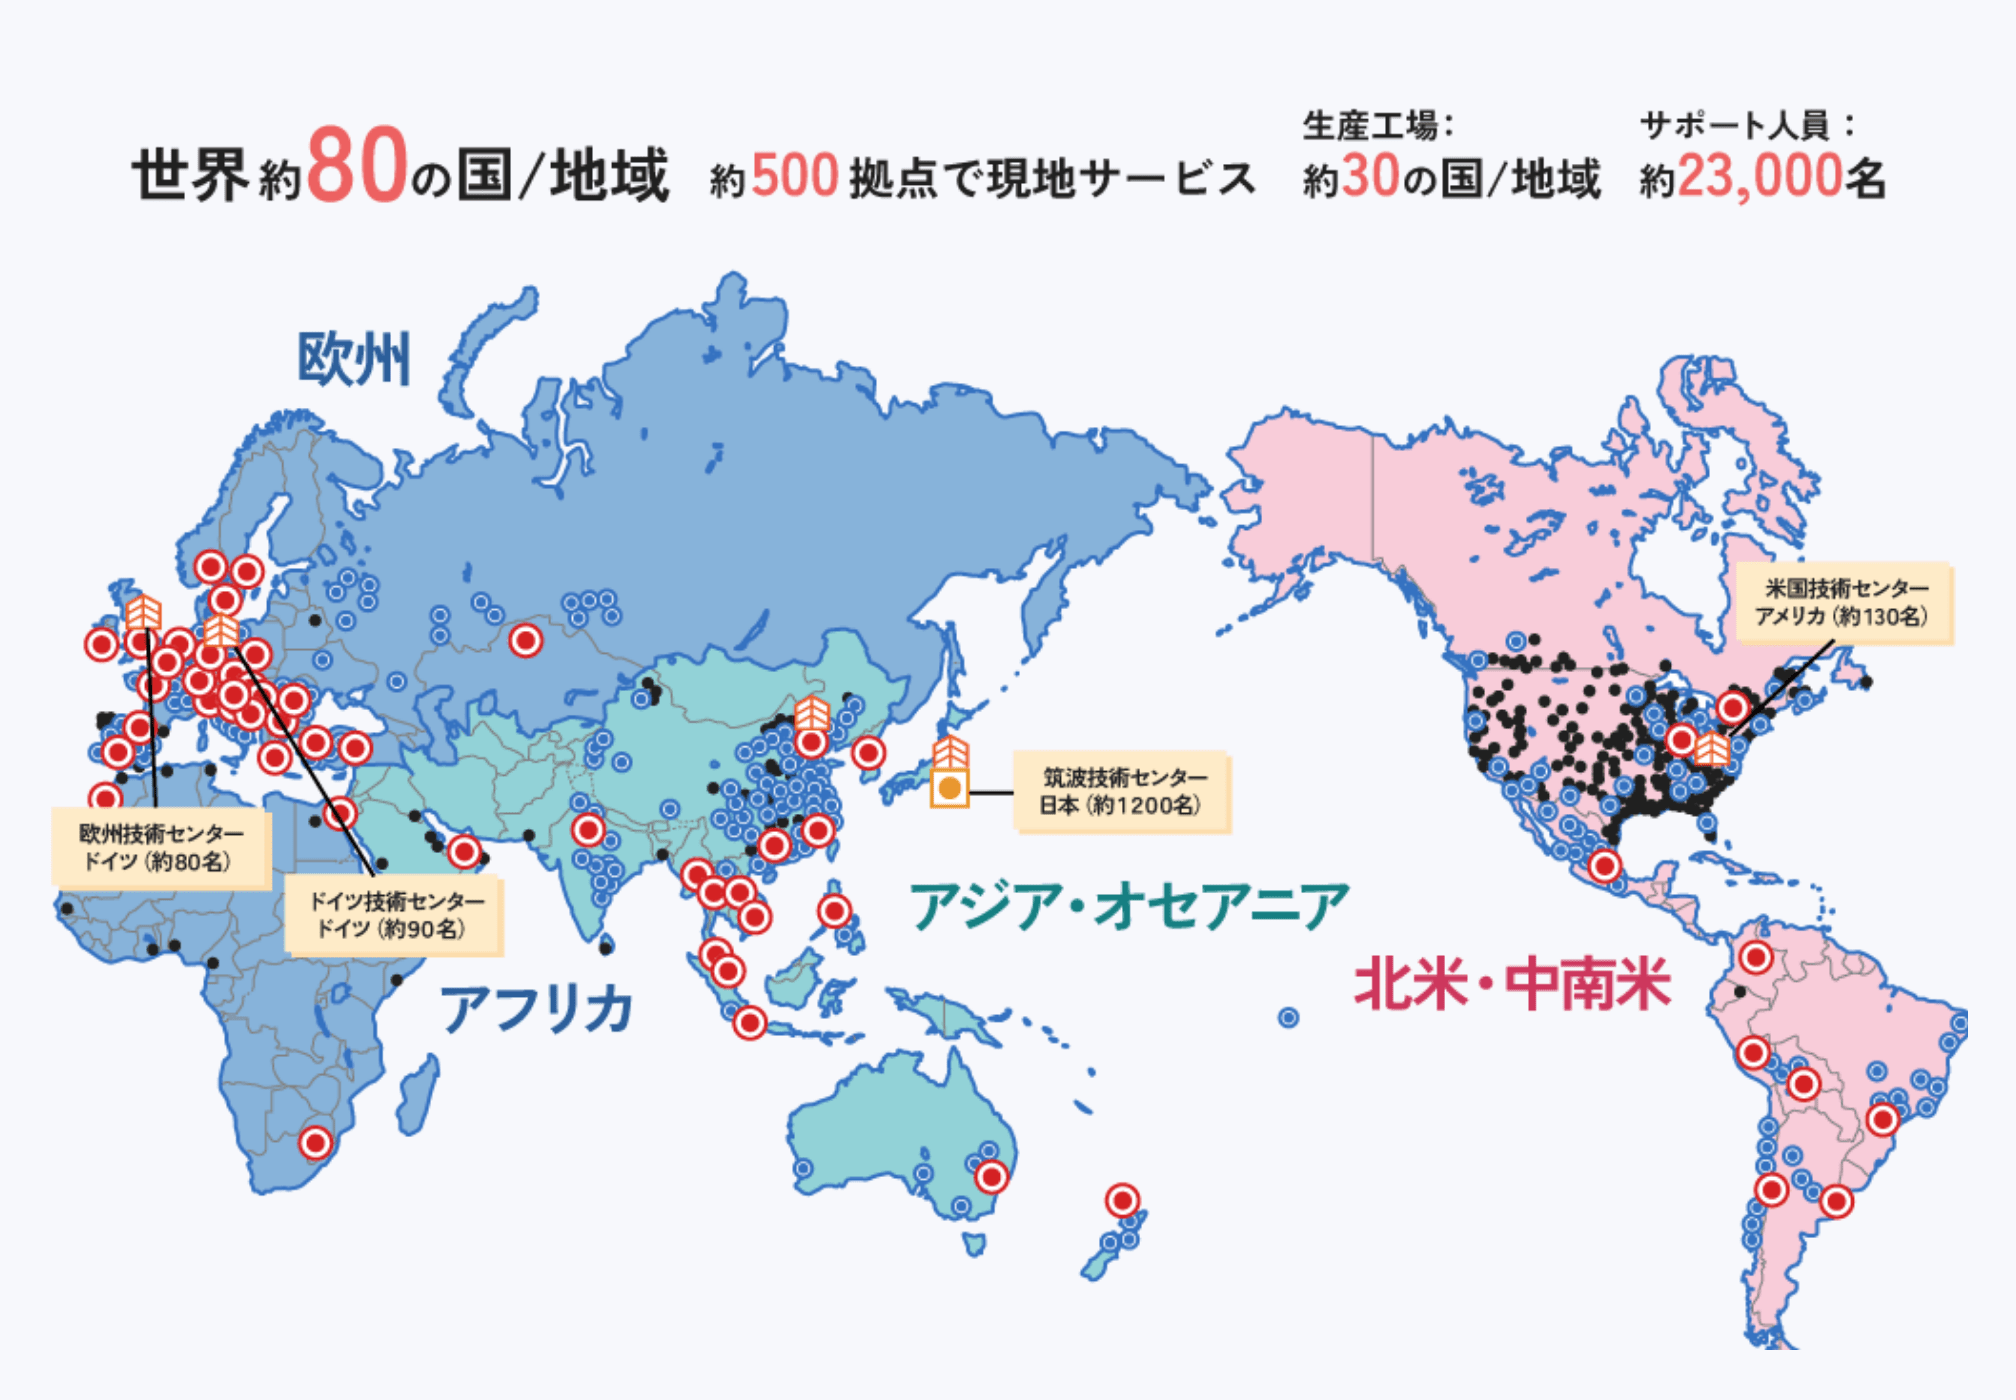 世界地図 世界約80の国／地域 約500拠点で現地サービス 生産工場：約30の国／地域 サポート人員：約23,000名